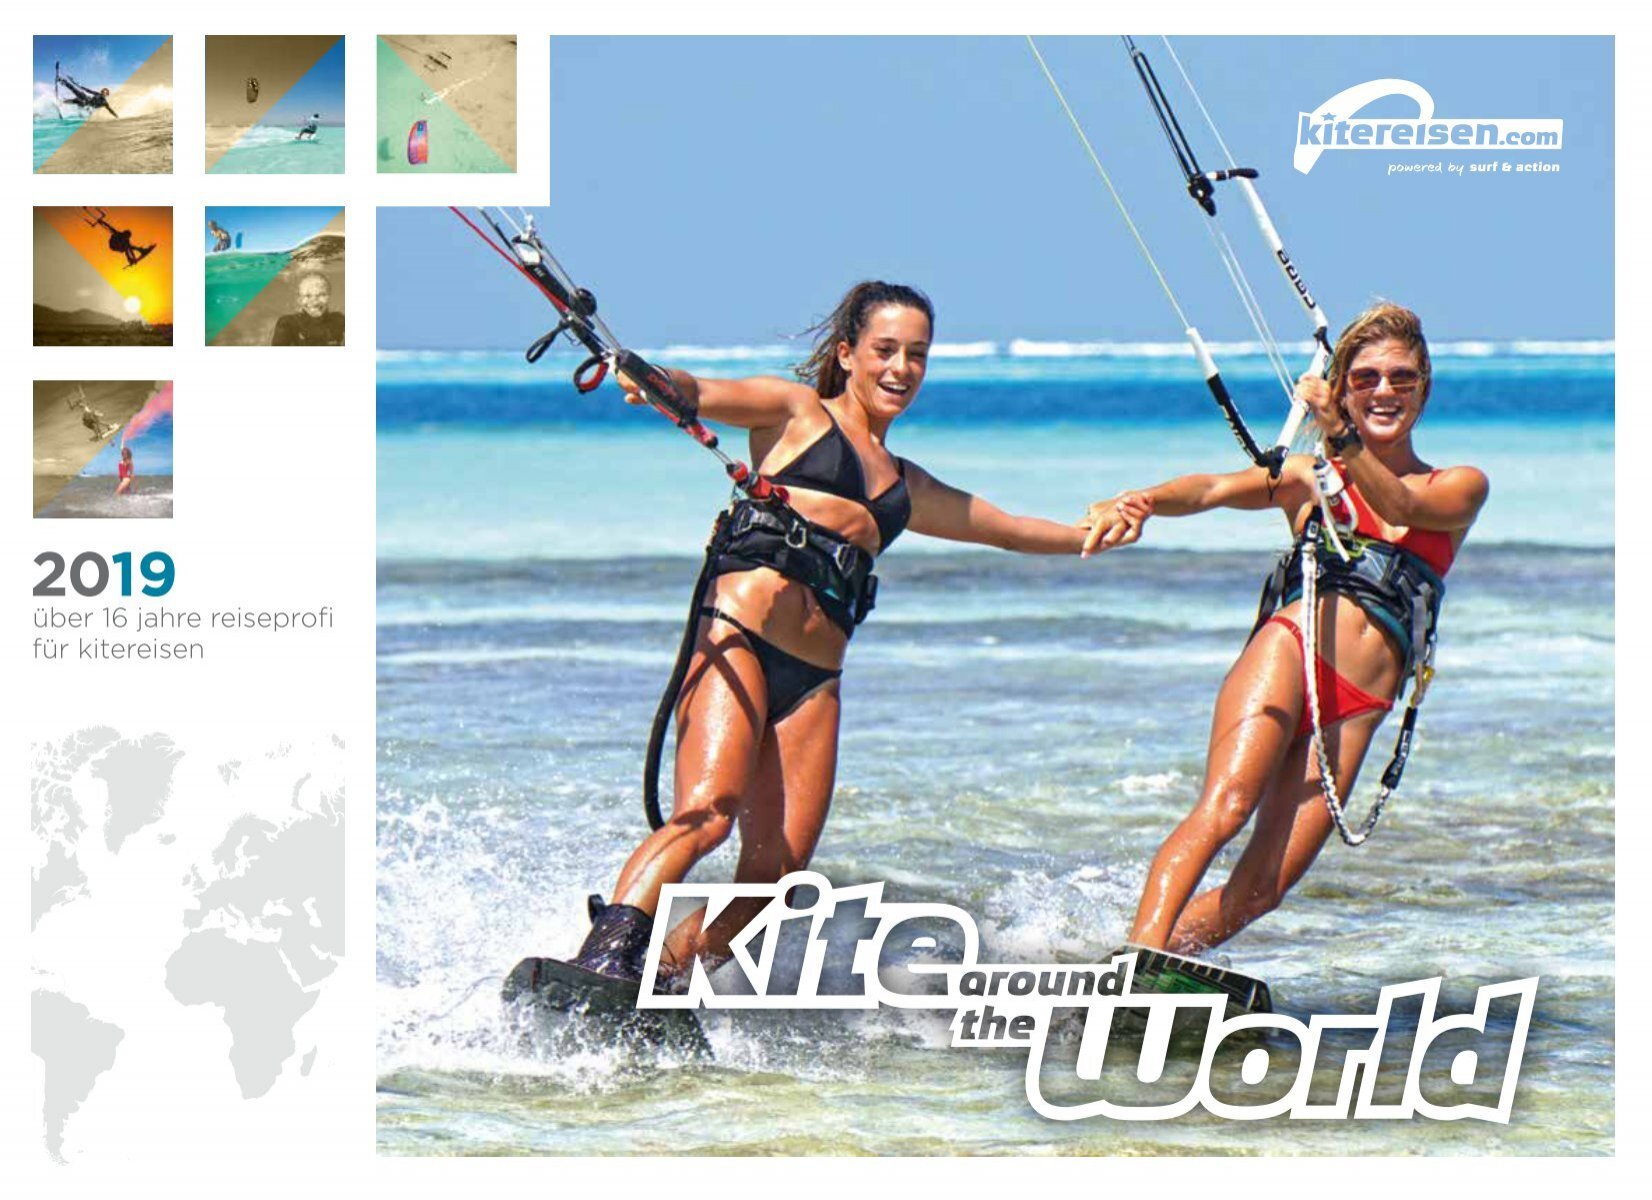 Kite around World the 2019